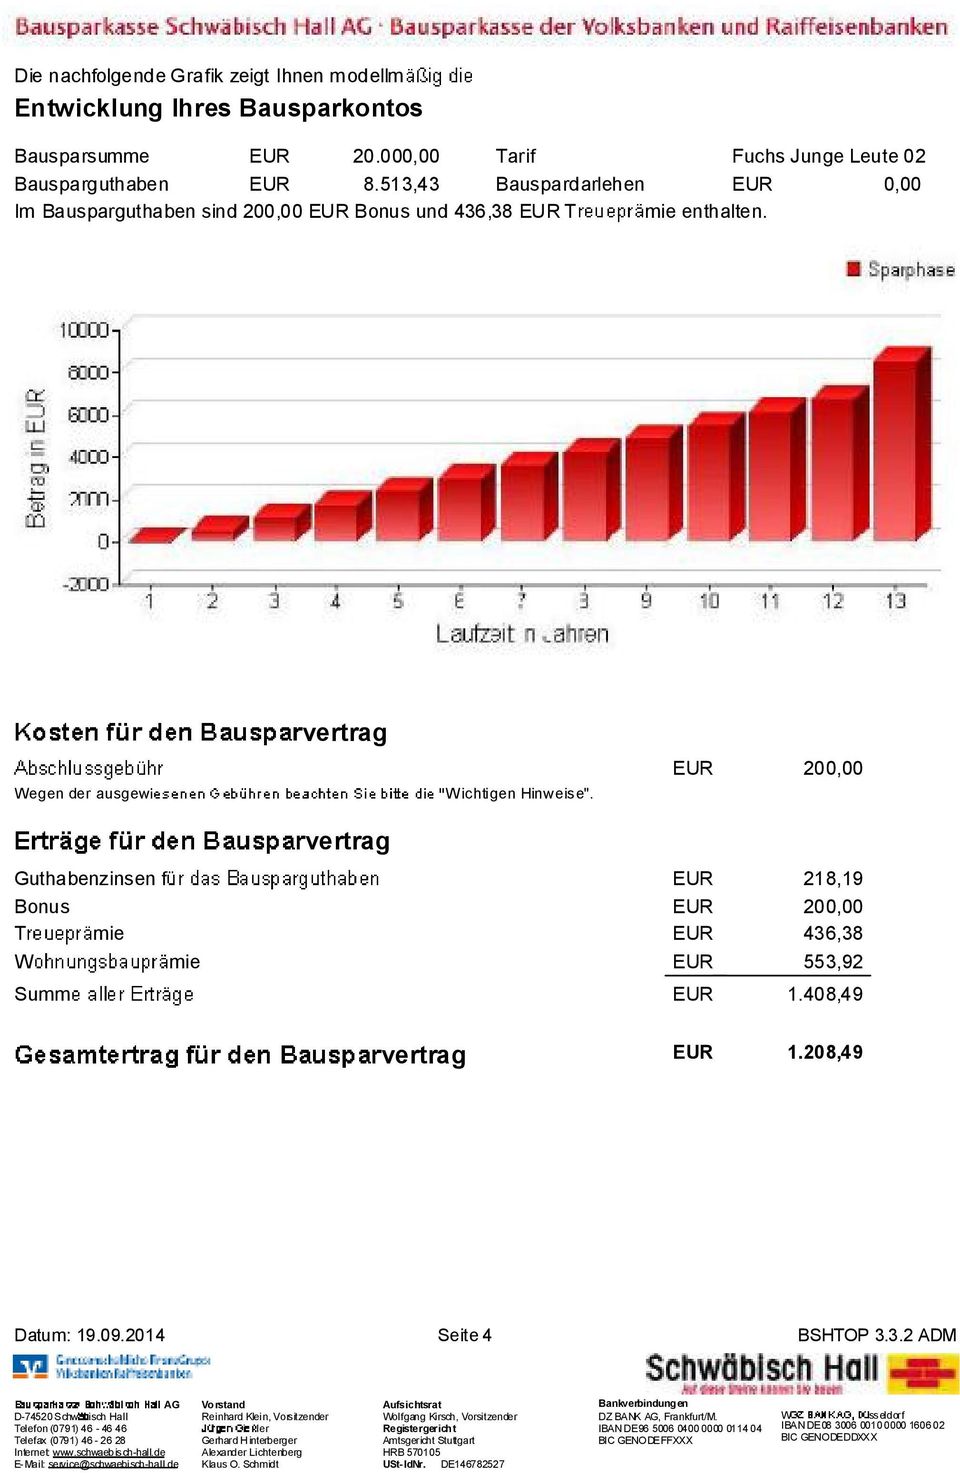 513,43 Bauspardarlehen EUR 0,00 Im Bausparguthaben sind 200,00 EUR Bonus und 436,38 EUR T mie enthalten.